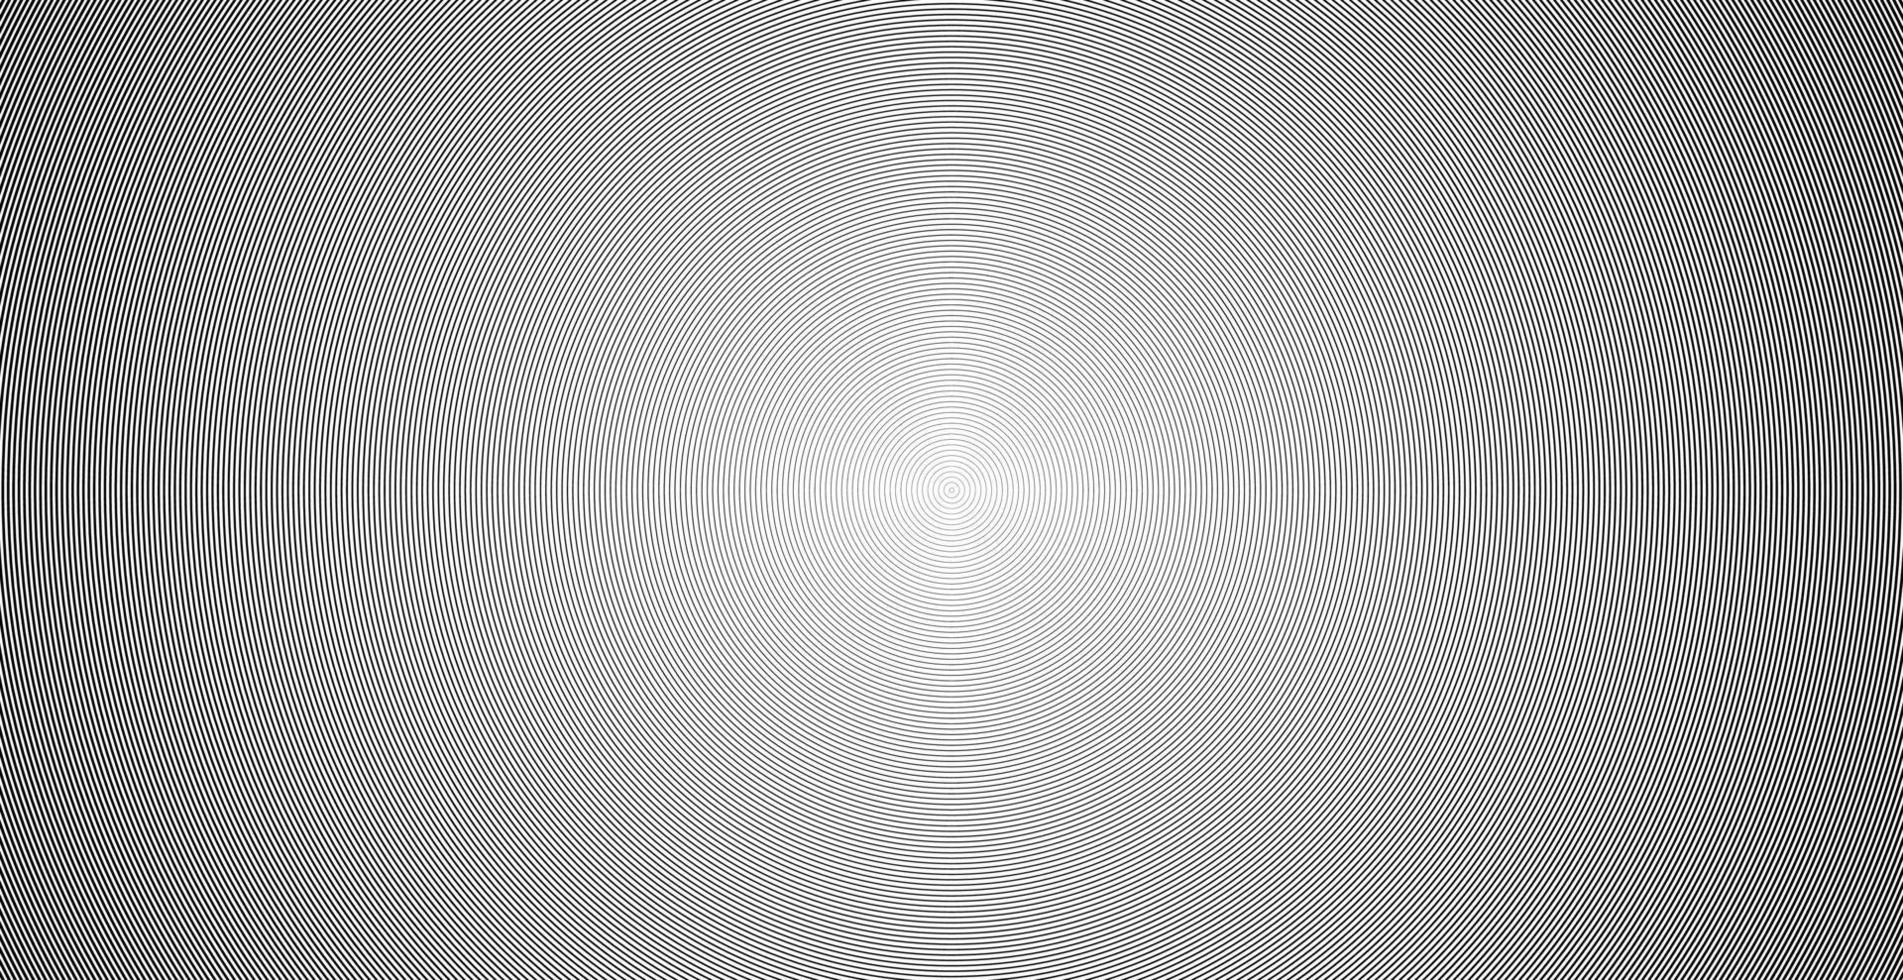 cerchio concentrico. illustrazione per l'onda sonora. modello di linea cerchio astratto. grafica in bianco e nero vettore